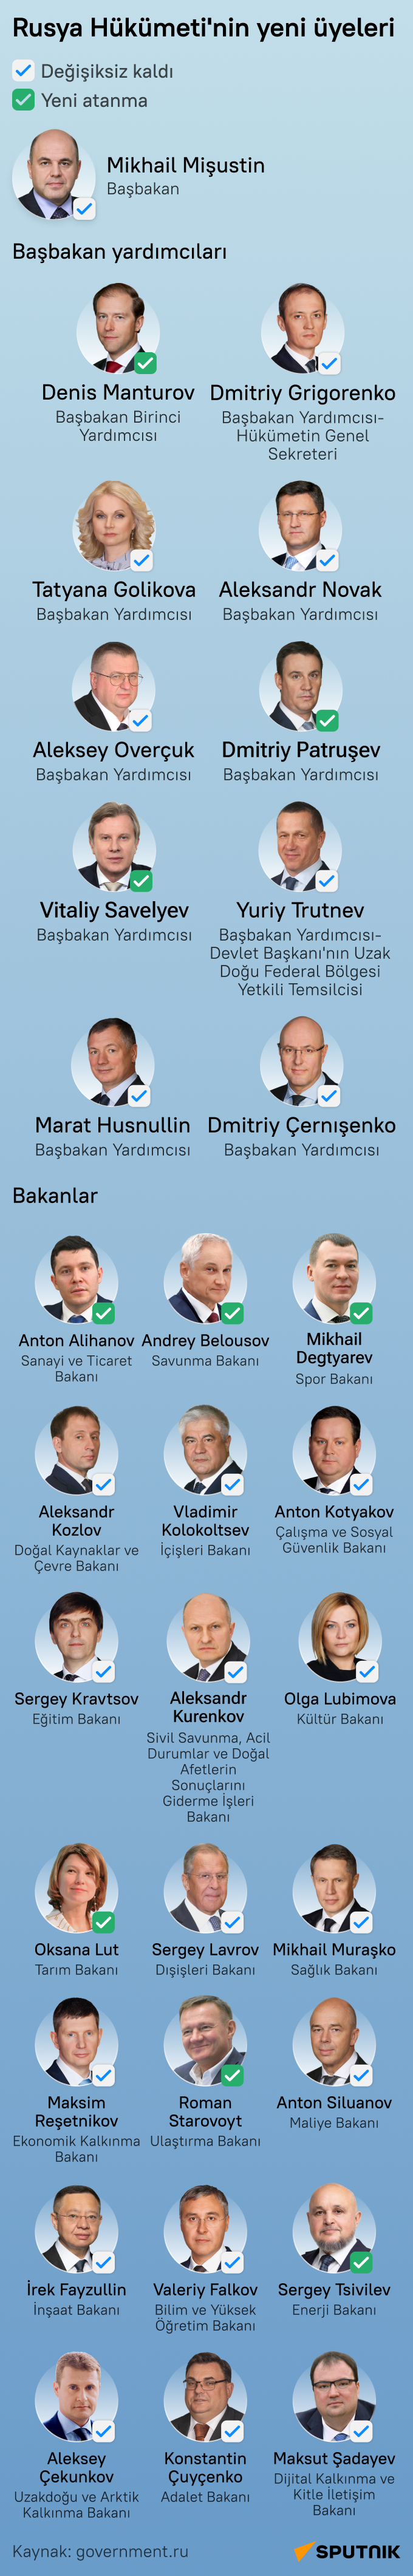 Rusya'nın yeni hükümetinde başbakan yardımcısı ve bakan olarak görev yapacak isimler - Sputnik Türkiye